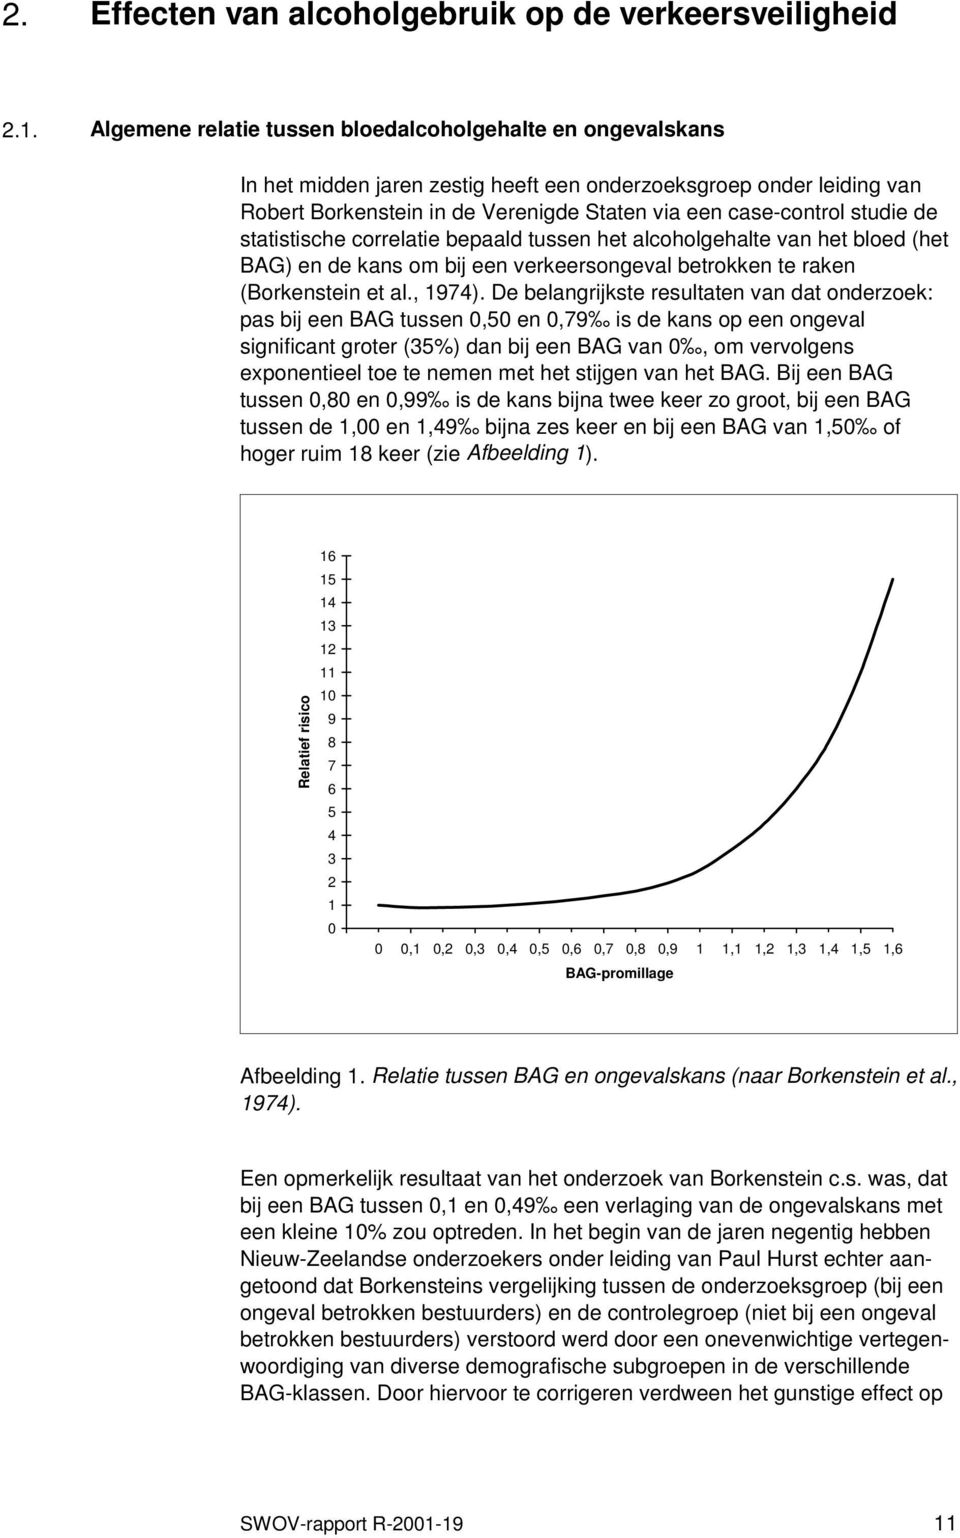 studie de statistische correlatie bepaald tussen het alcoholgehalte van het bloed (het BAG) en de kans om bij een verkeersongeval betrokken te raken (Borkenstein et al., 1974).